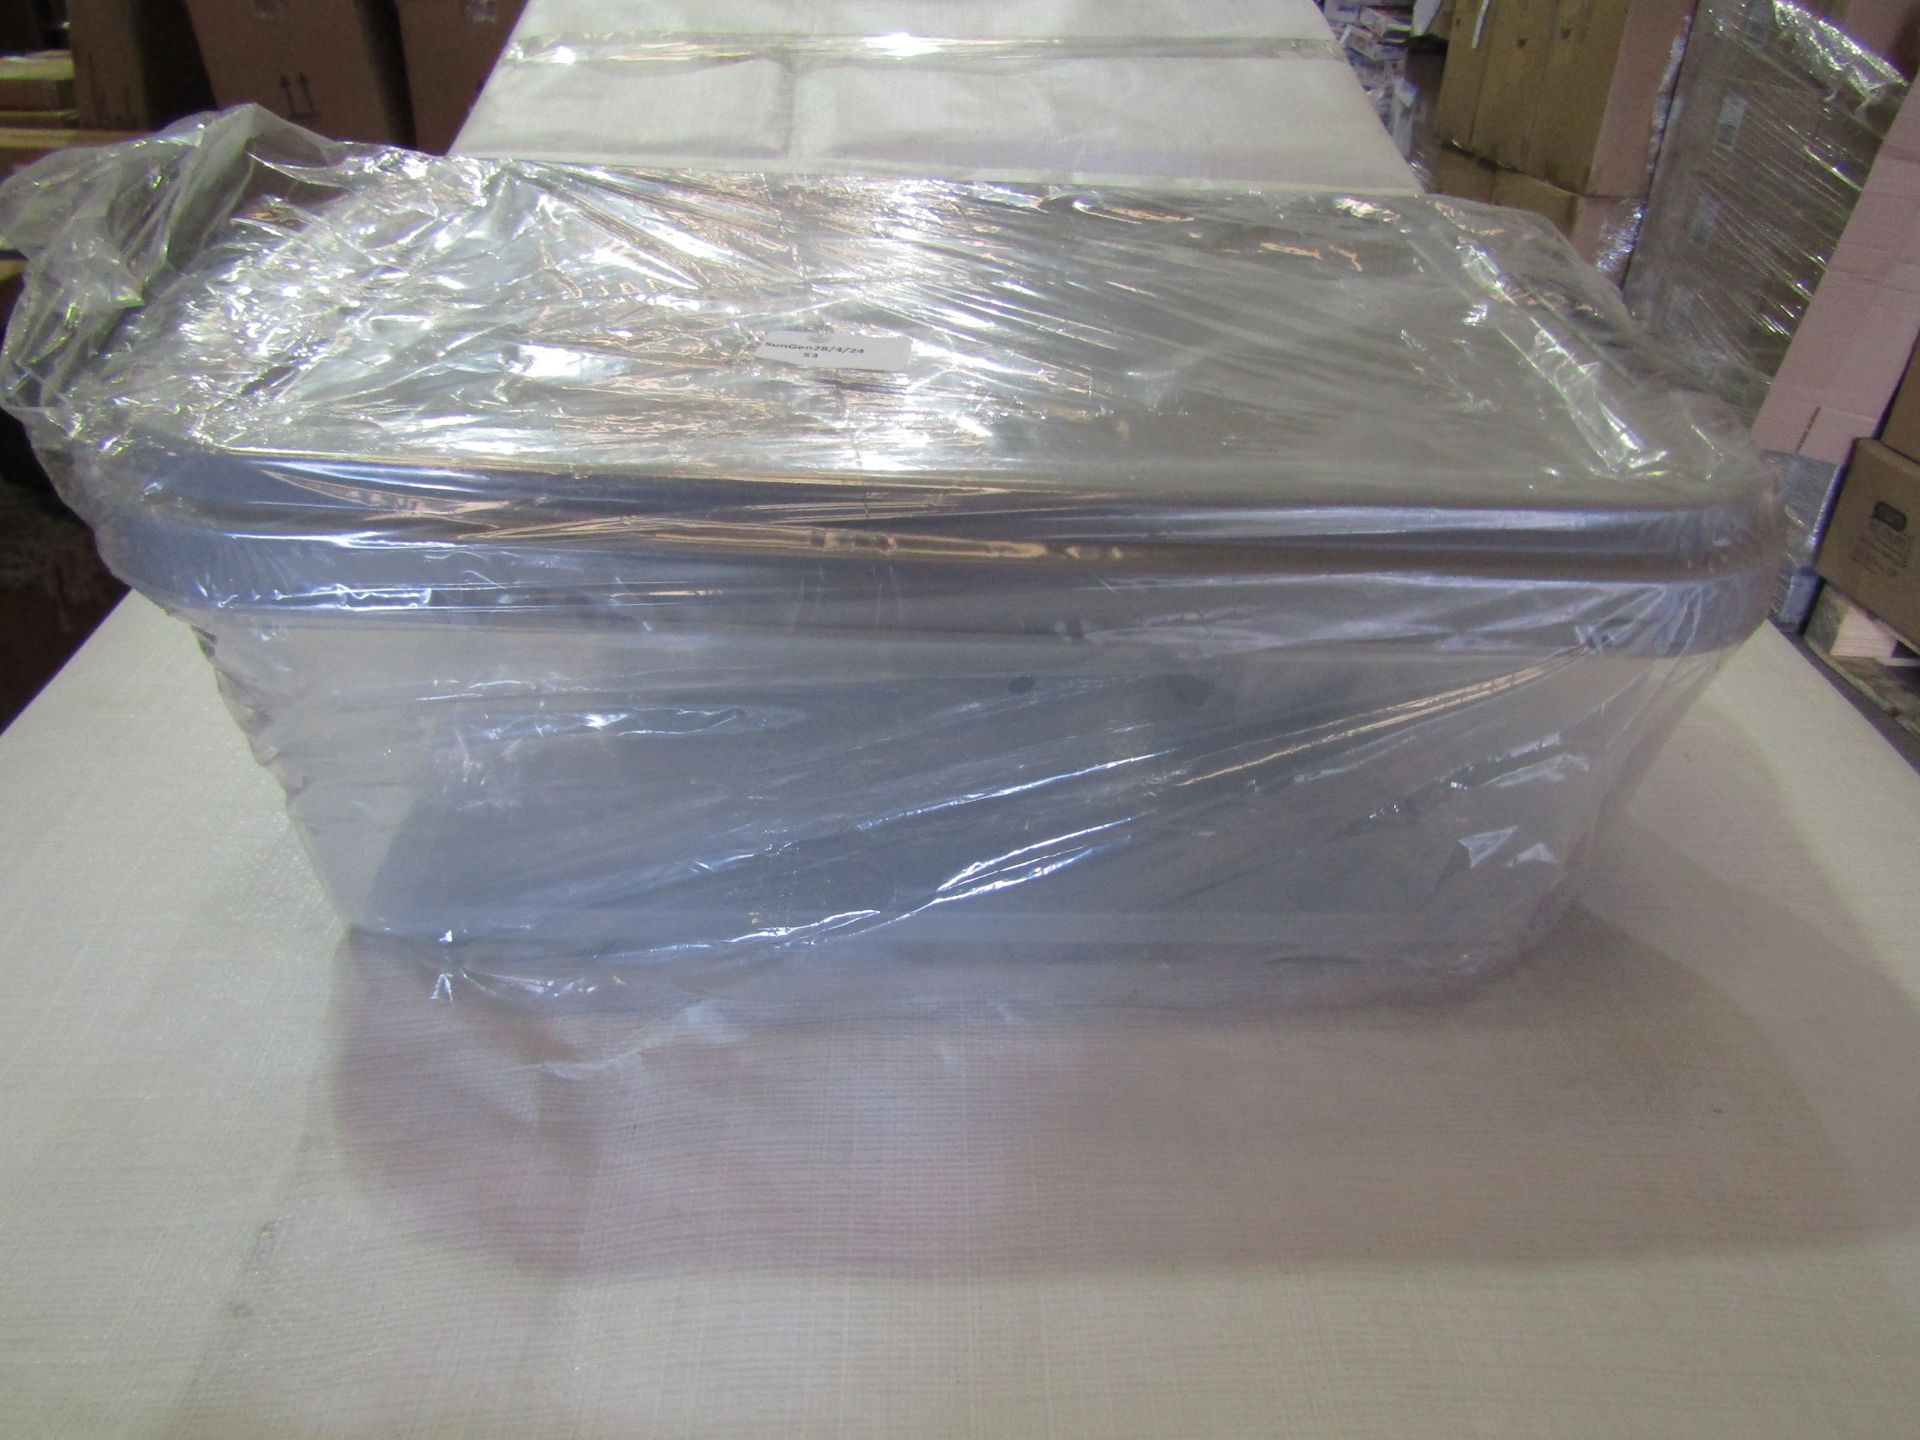 Plastic Sorage Tub With Scoop - Unused & Packaged.